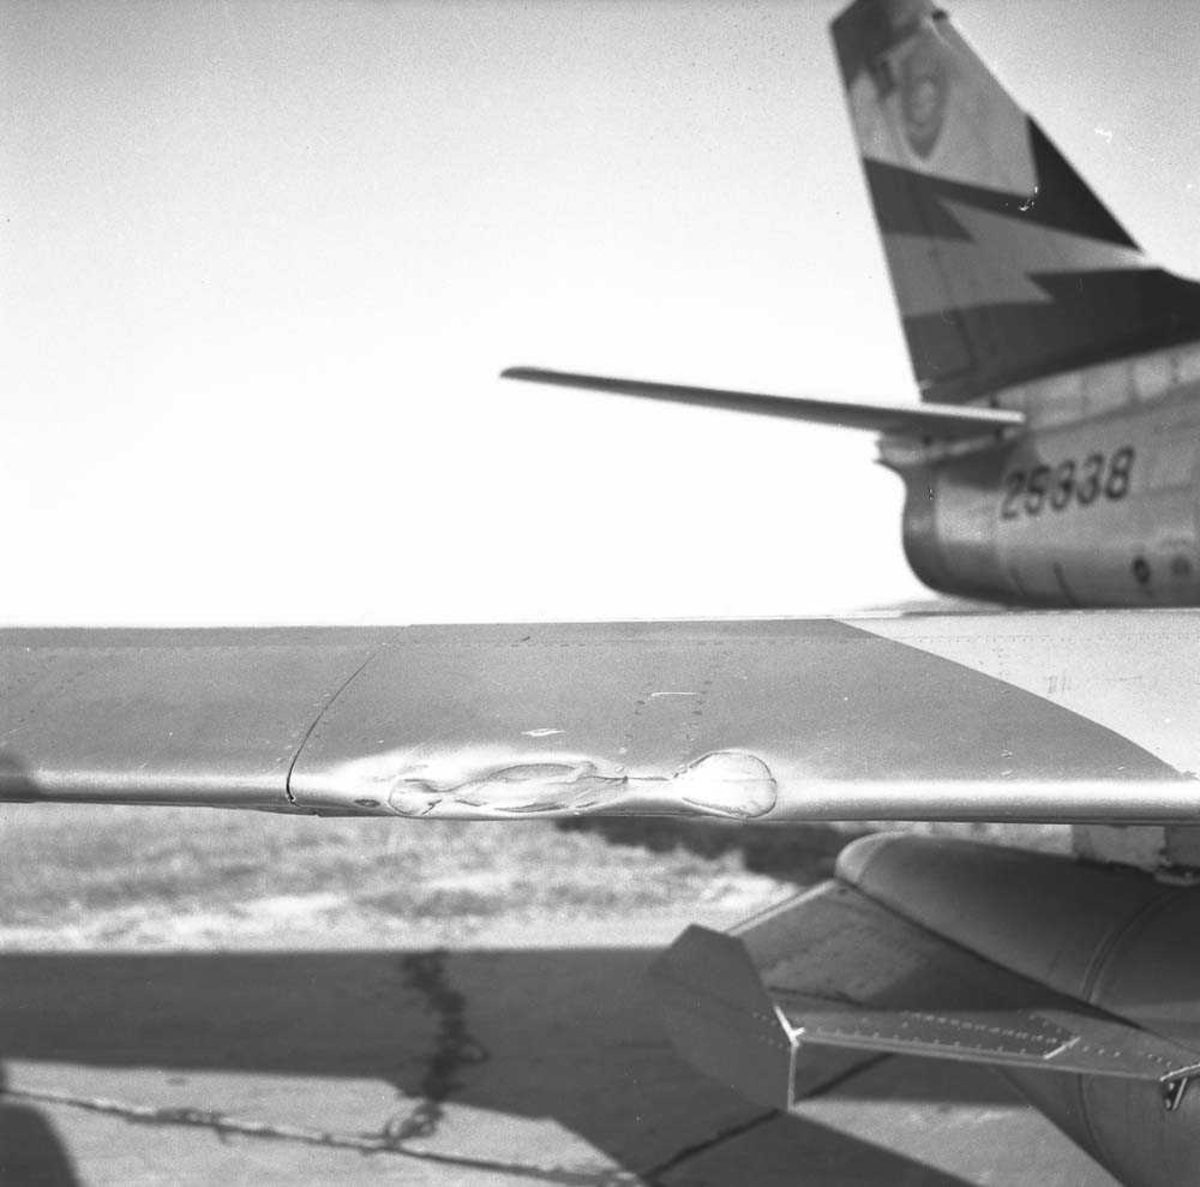 F-86-F Sabre MU-F ser nr. 52-5338, tilhørende 338 skvadron, Ørlandet flystasjon, har havnet utenfor flystripen.